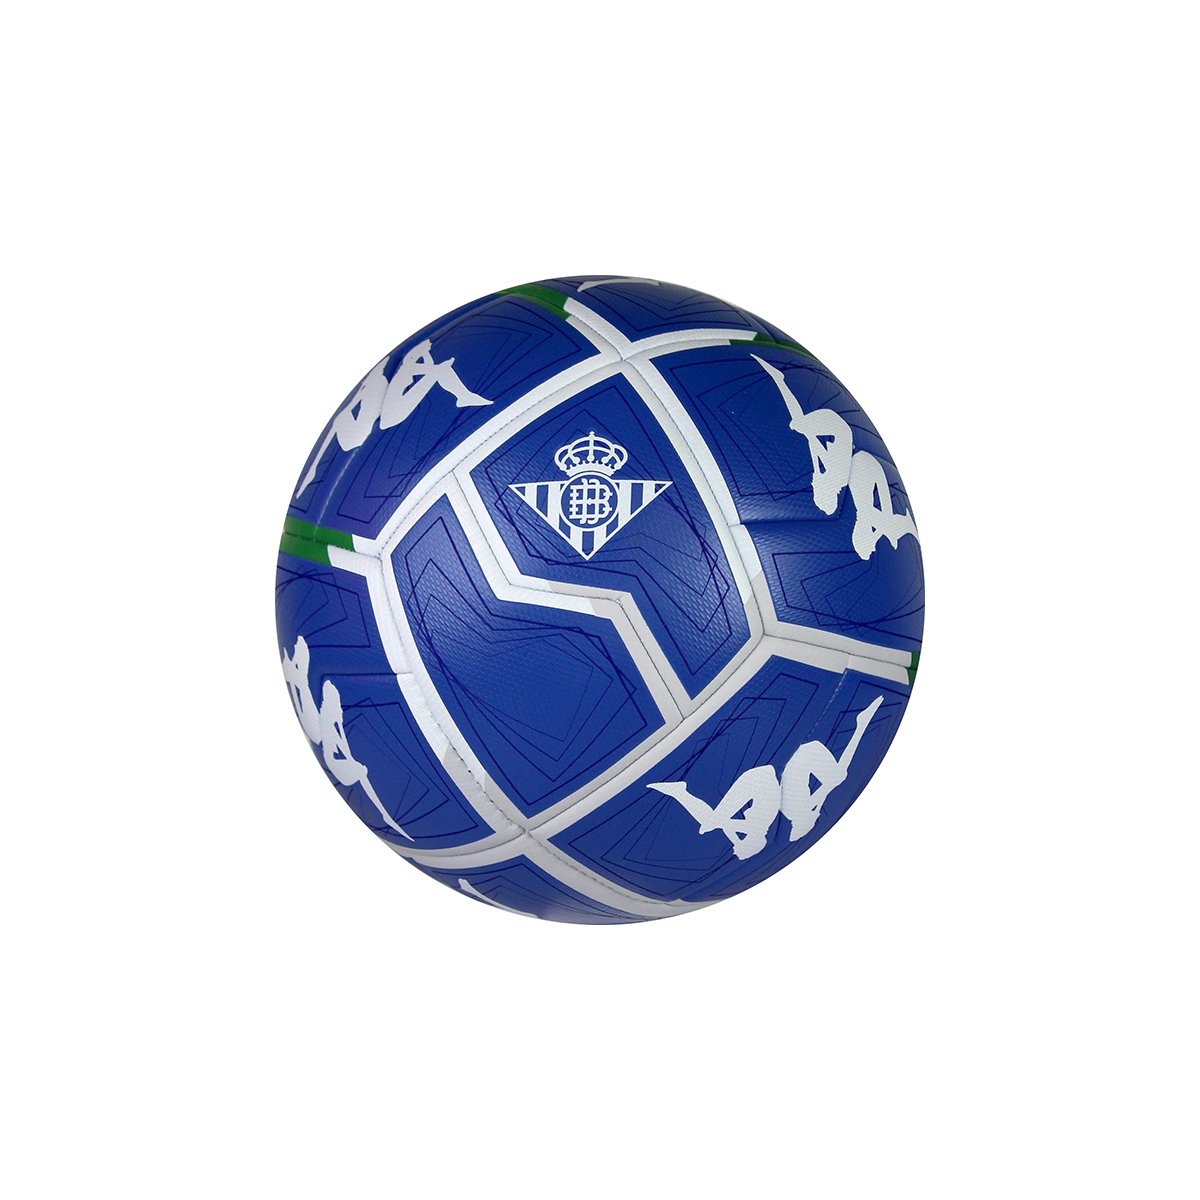 Balón de fútbol Player 20.3 Real Betis Balompié unisex Azul - Imagen 1